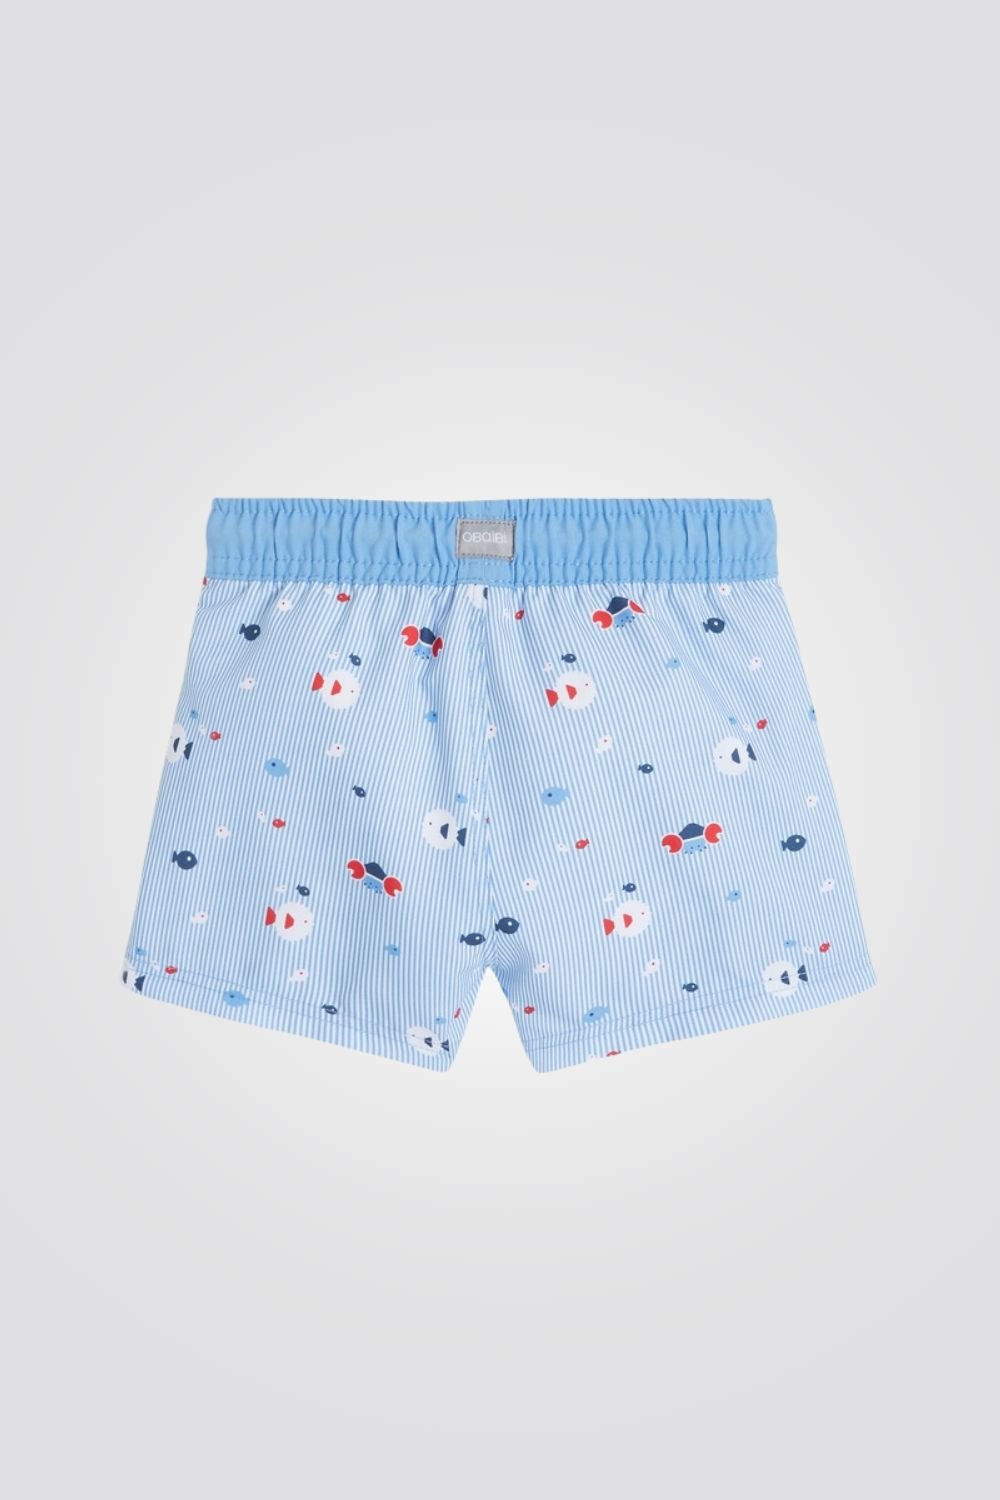 OBAIBI - מכנס בגד ים לתינוקות בצבע כחול - MASHBIR//365